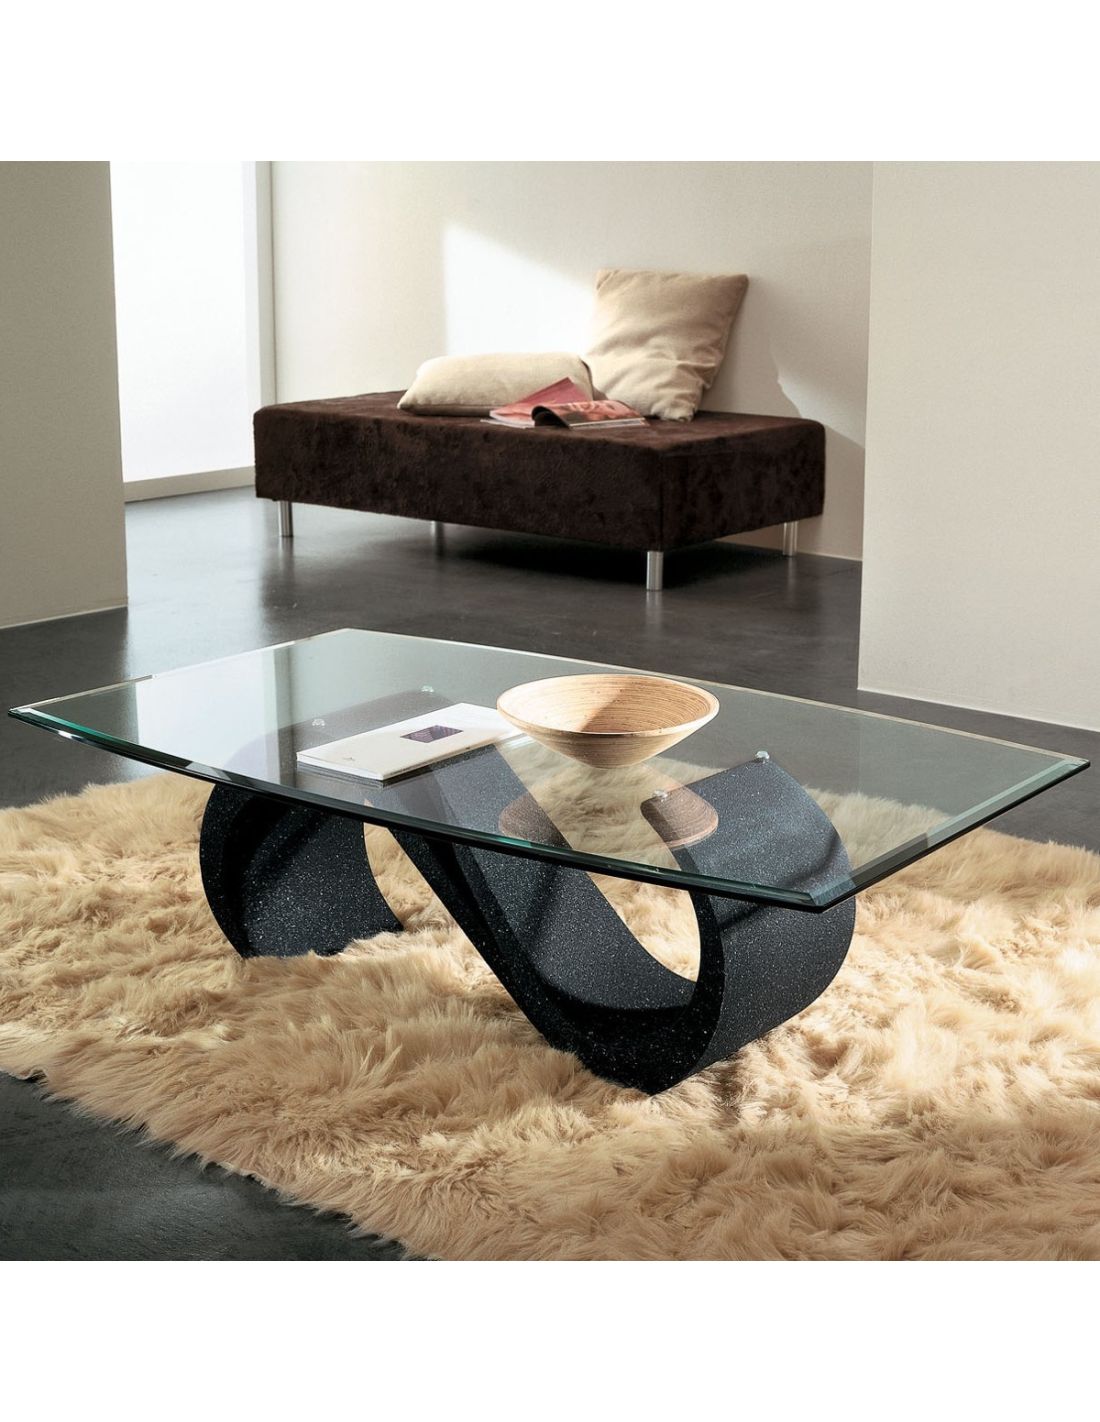 Tavolino salotto in vetro moderno ovale 120 x 70 cm runi for Lago tavolini salotto